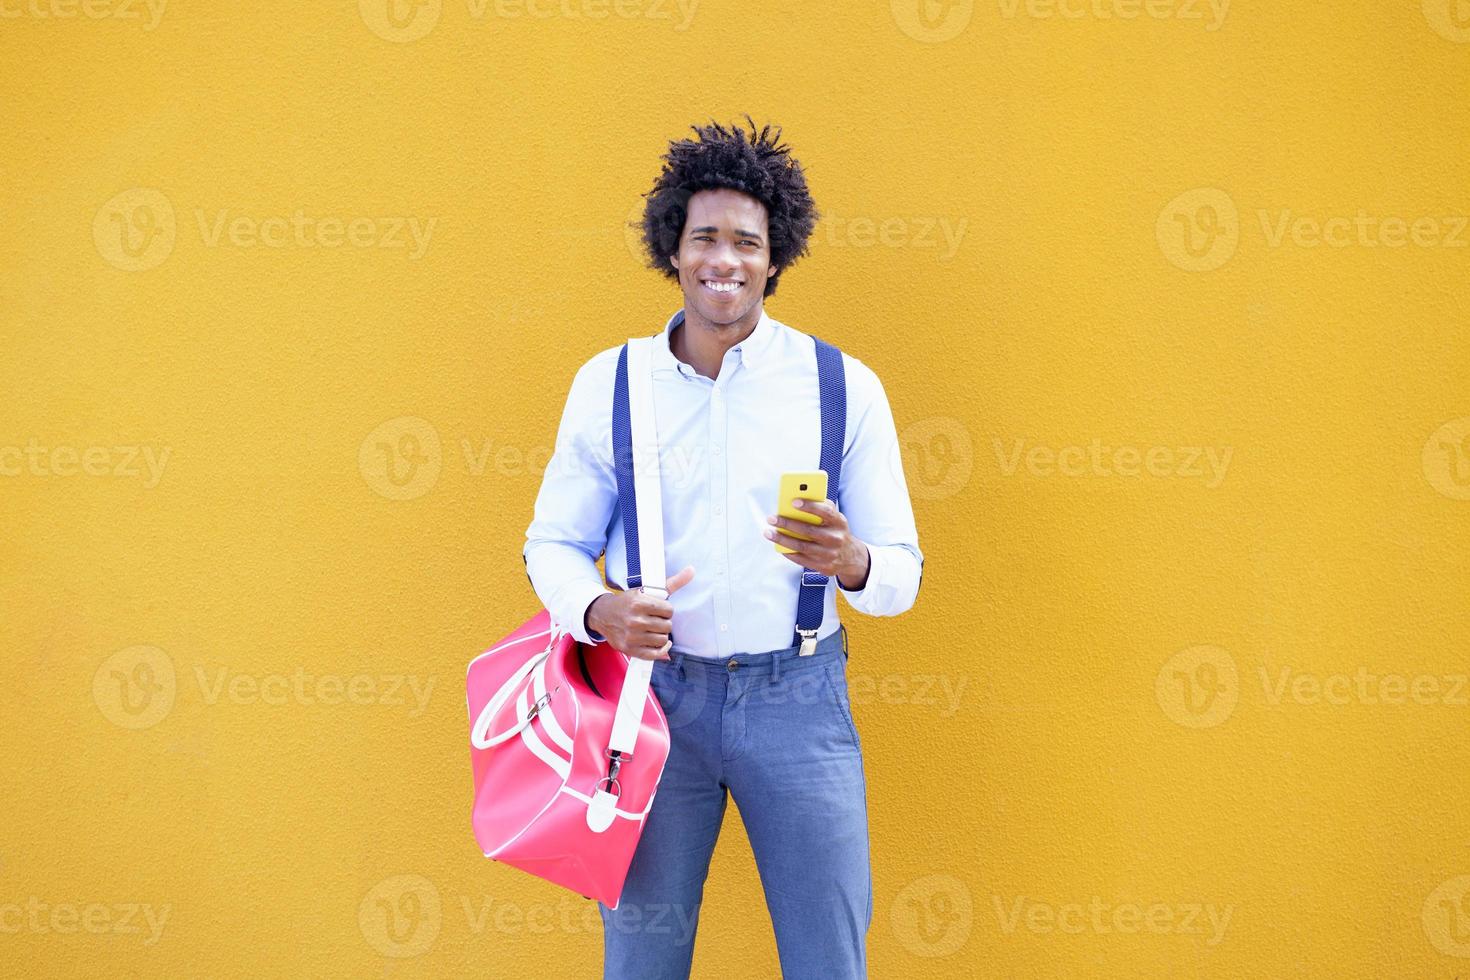 negro com penteado afro carregando uma sacola esportiva foto